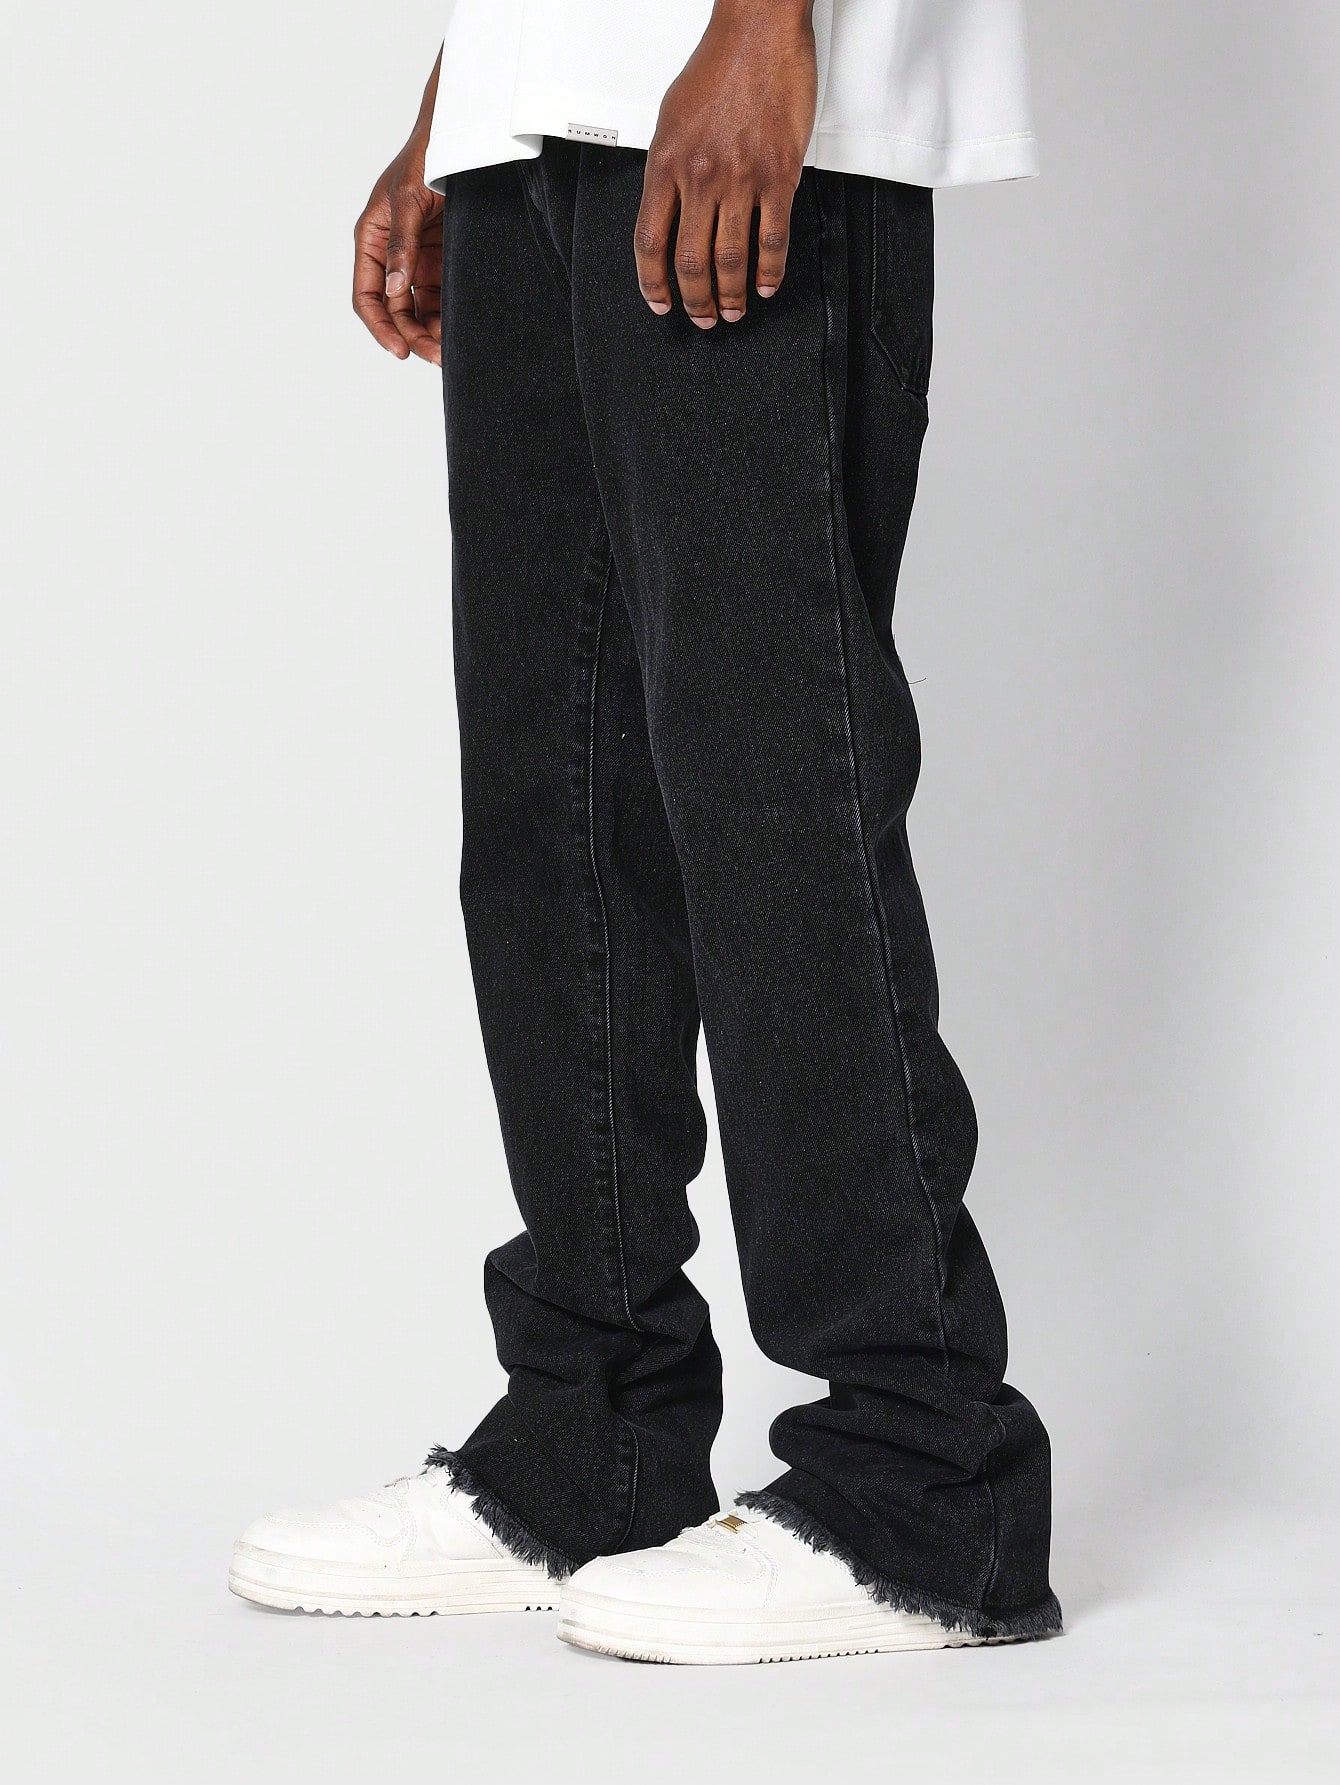 finn flare джинсы джоггеры мужские с поясом на резинке Джинсы SUMWON Flare Fit с двойным поясом, черный